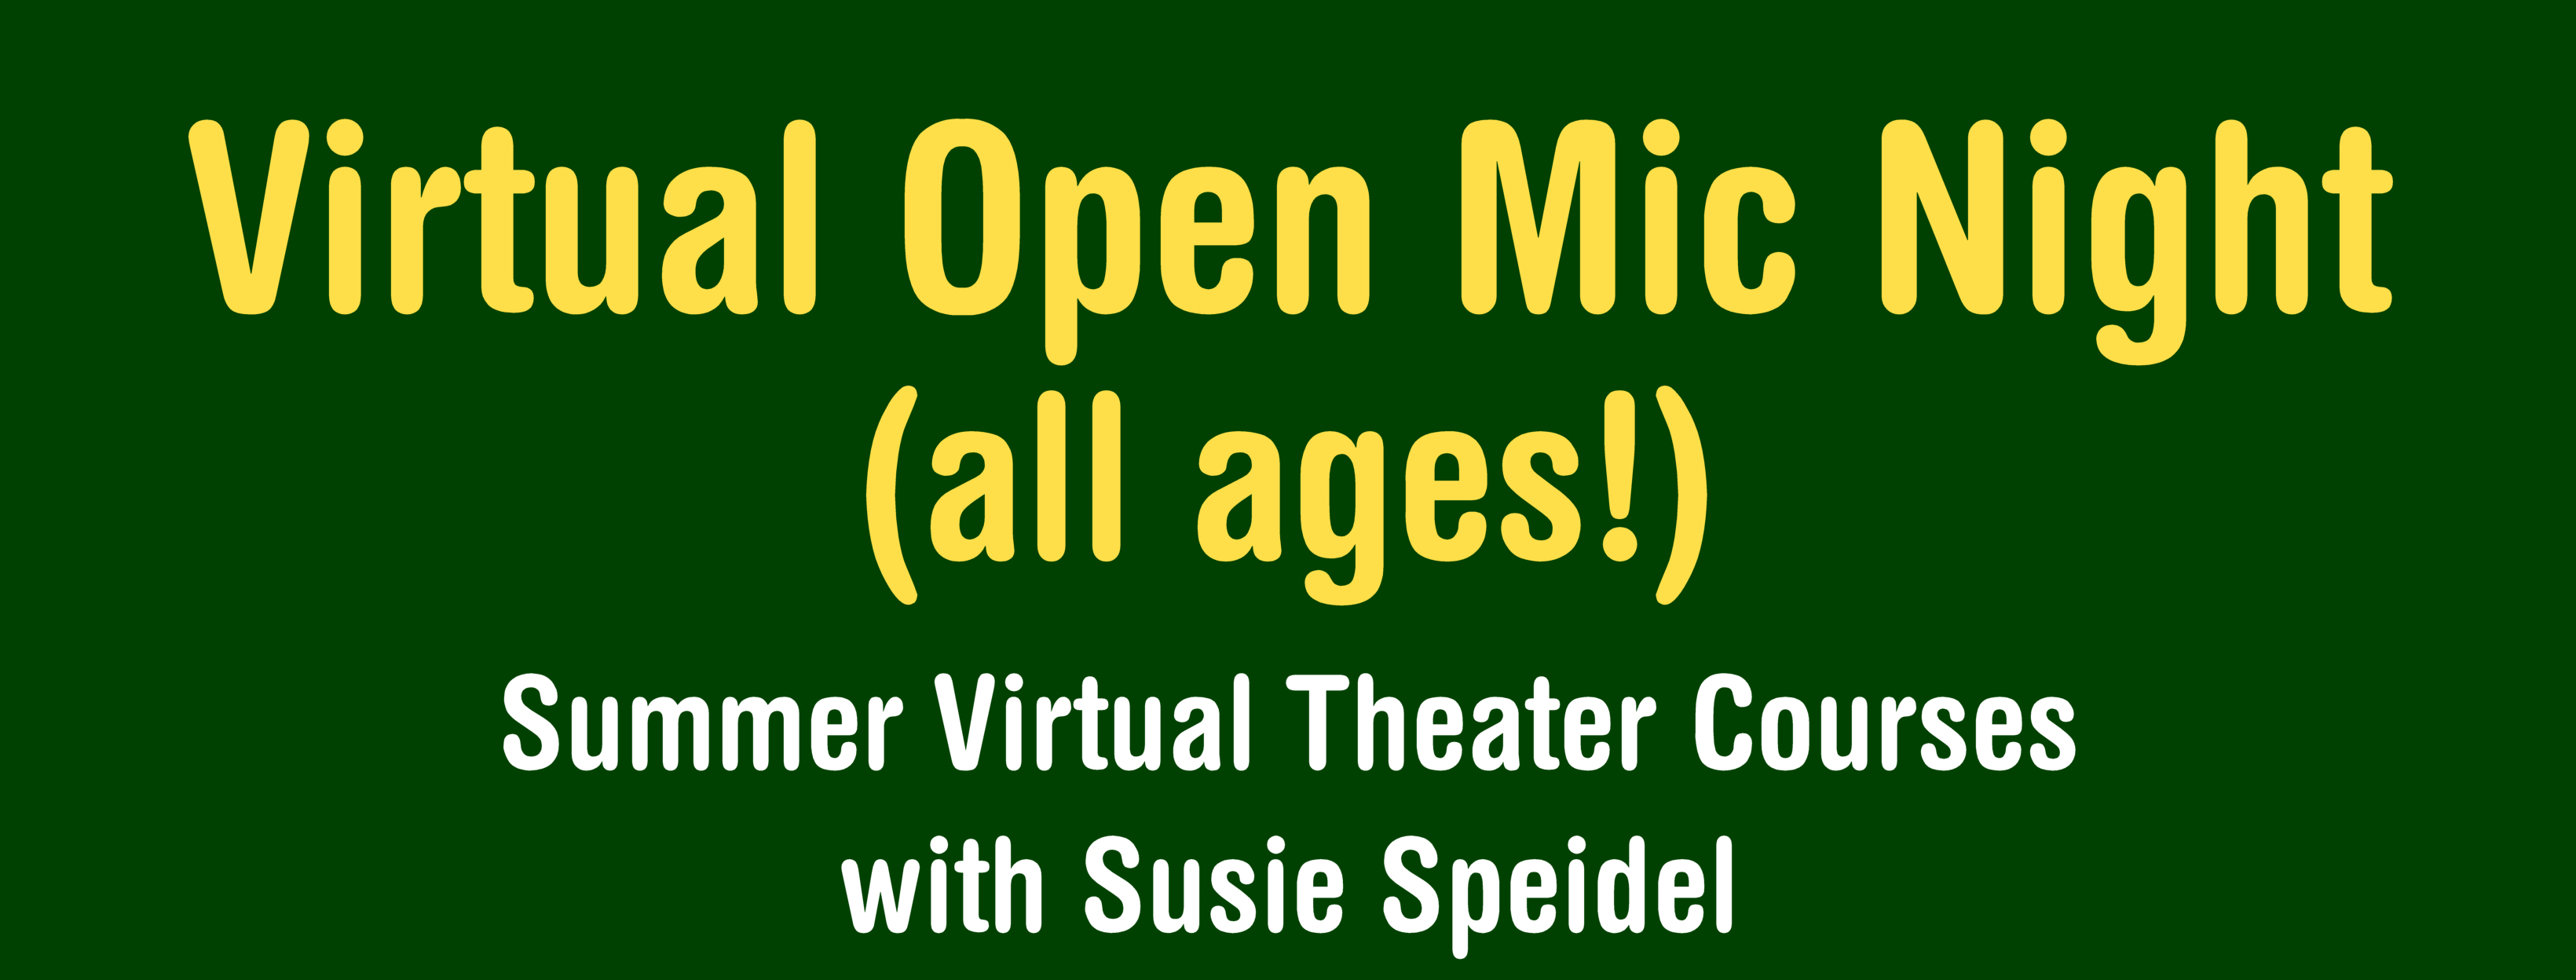 Virtual Theater Course: Virtual Open Mic Night